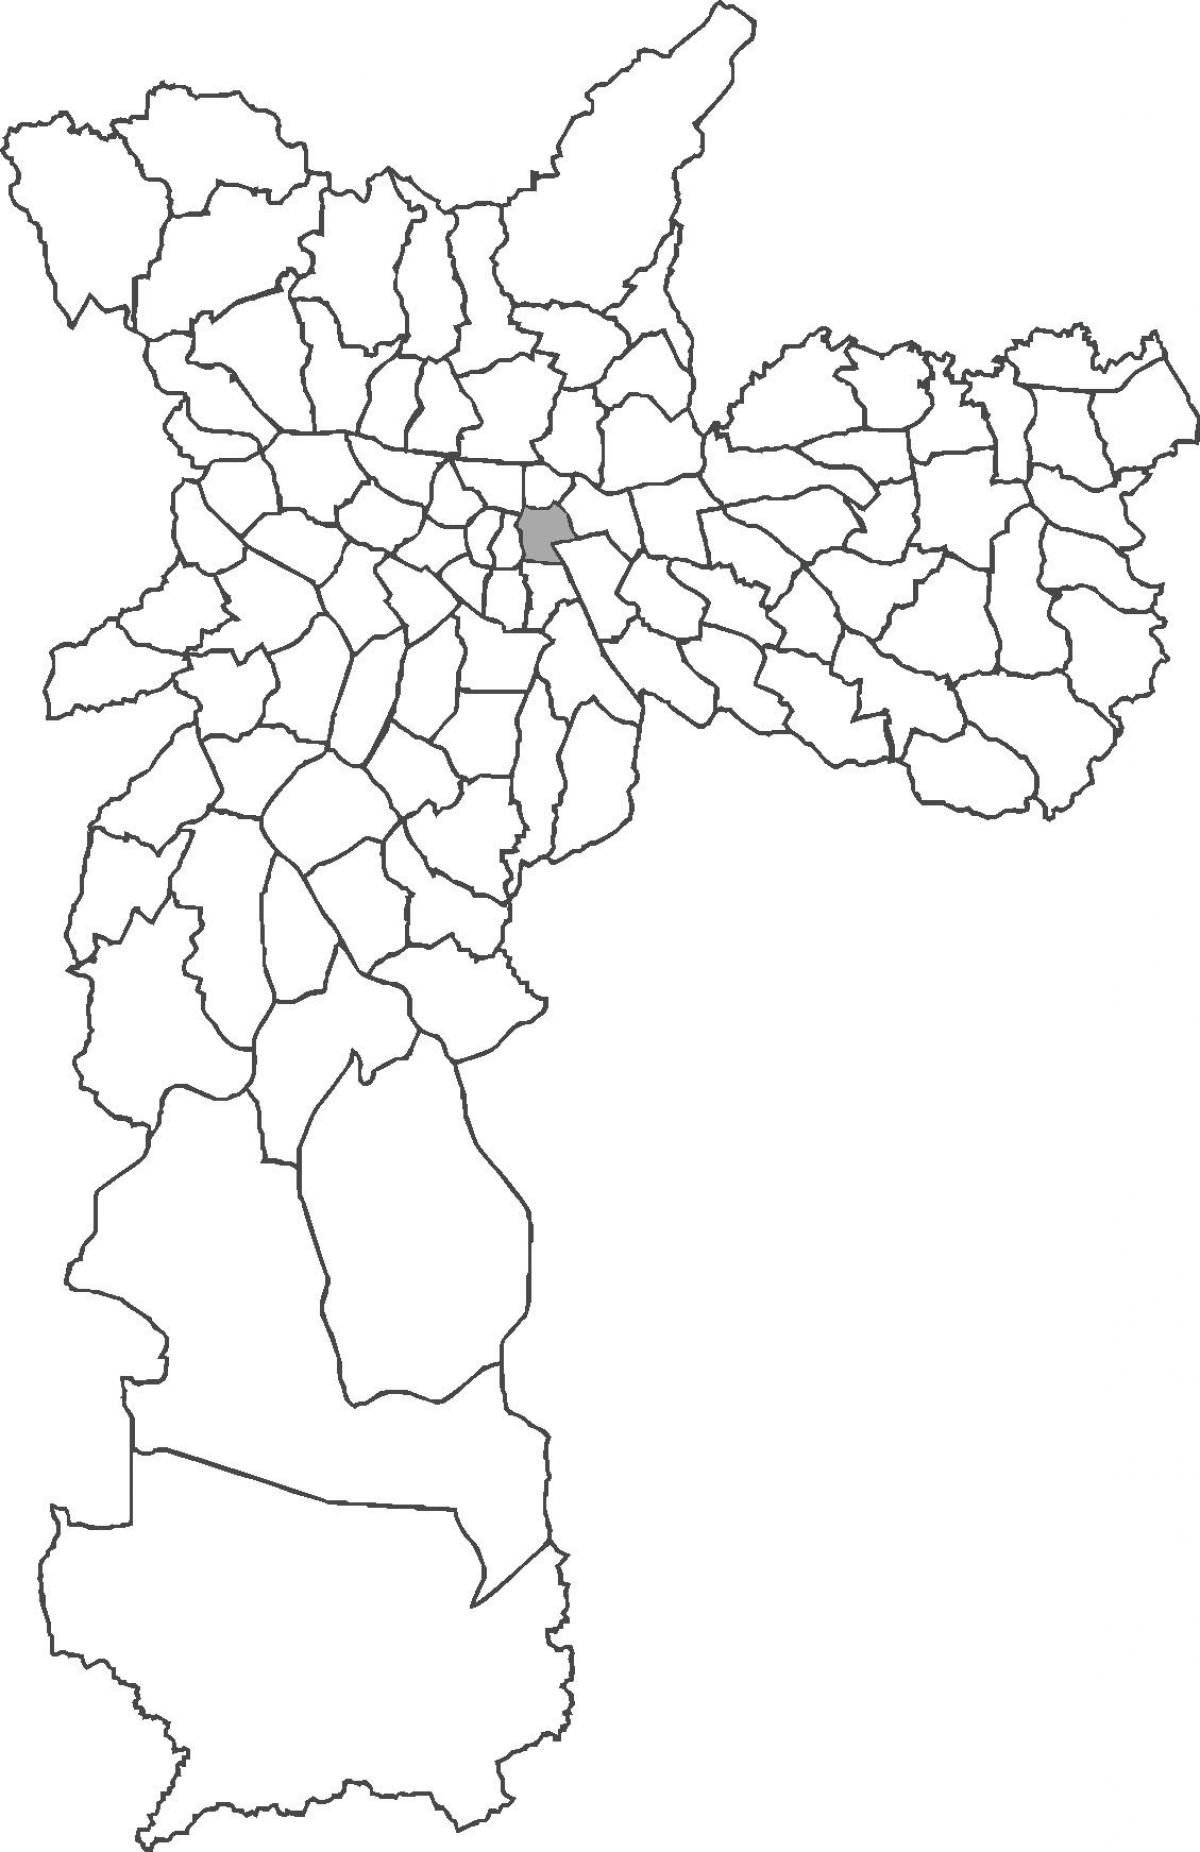 Mapa do distrito do Brás